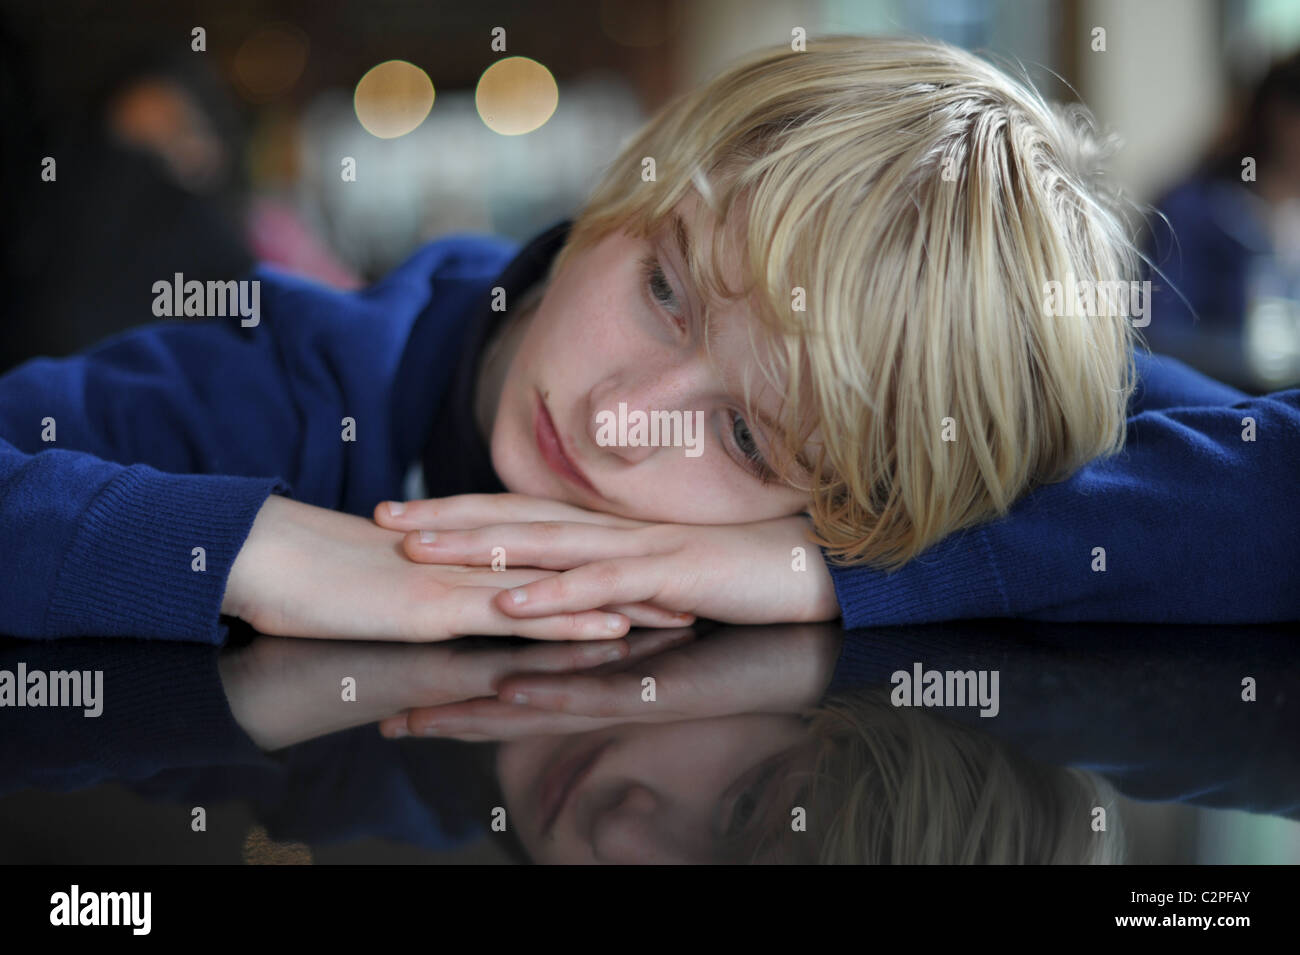 Rubio adolescente descansando su cabeza en sus manos en un restaurante mirando aburrido y triste Foto de stock